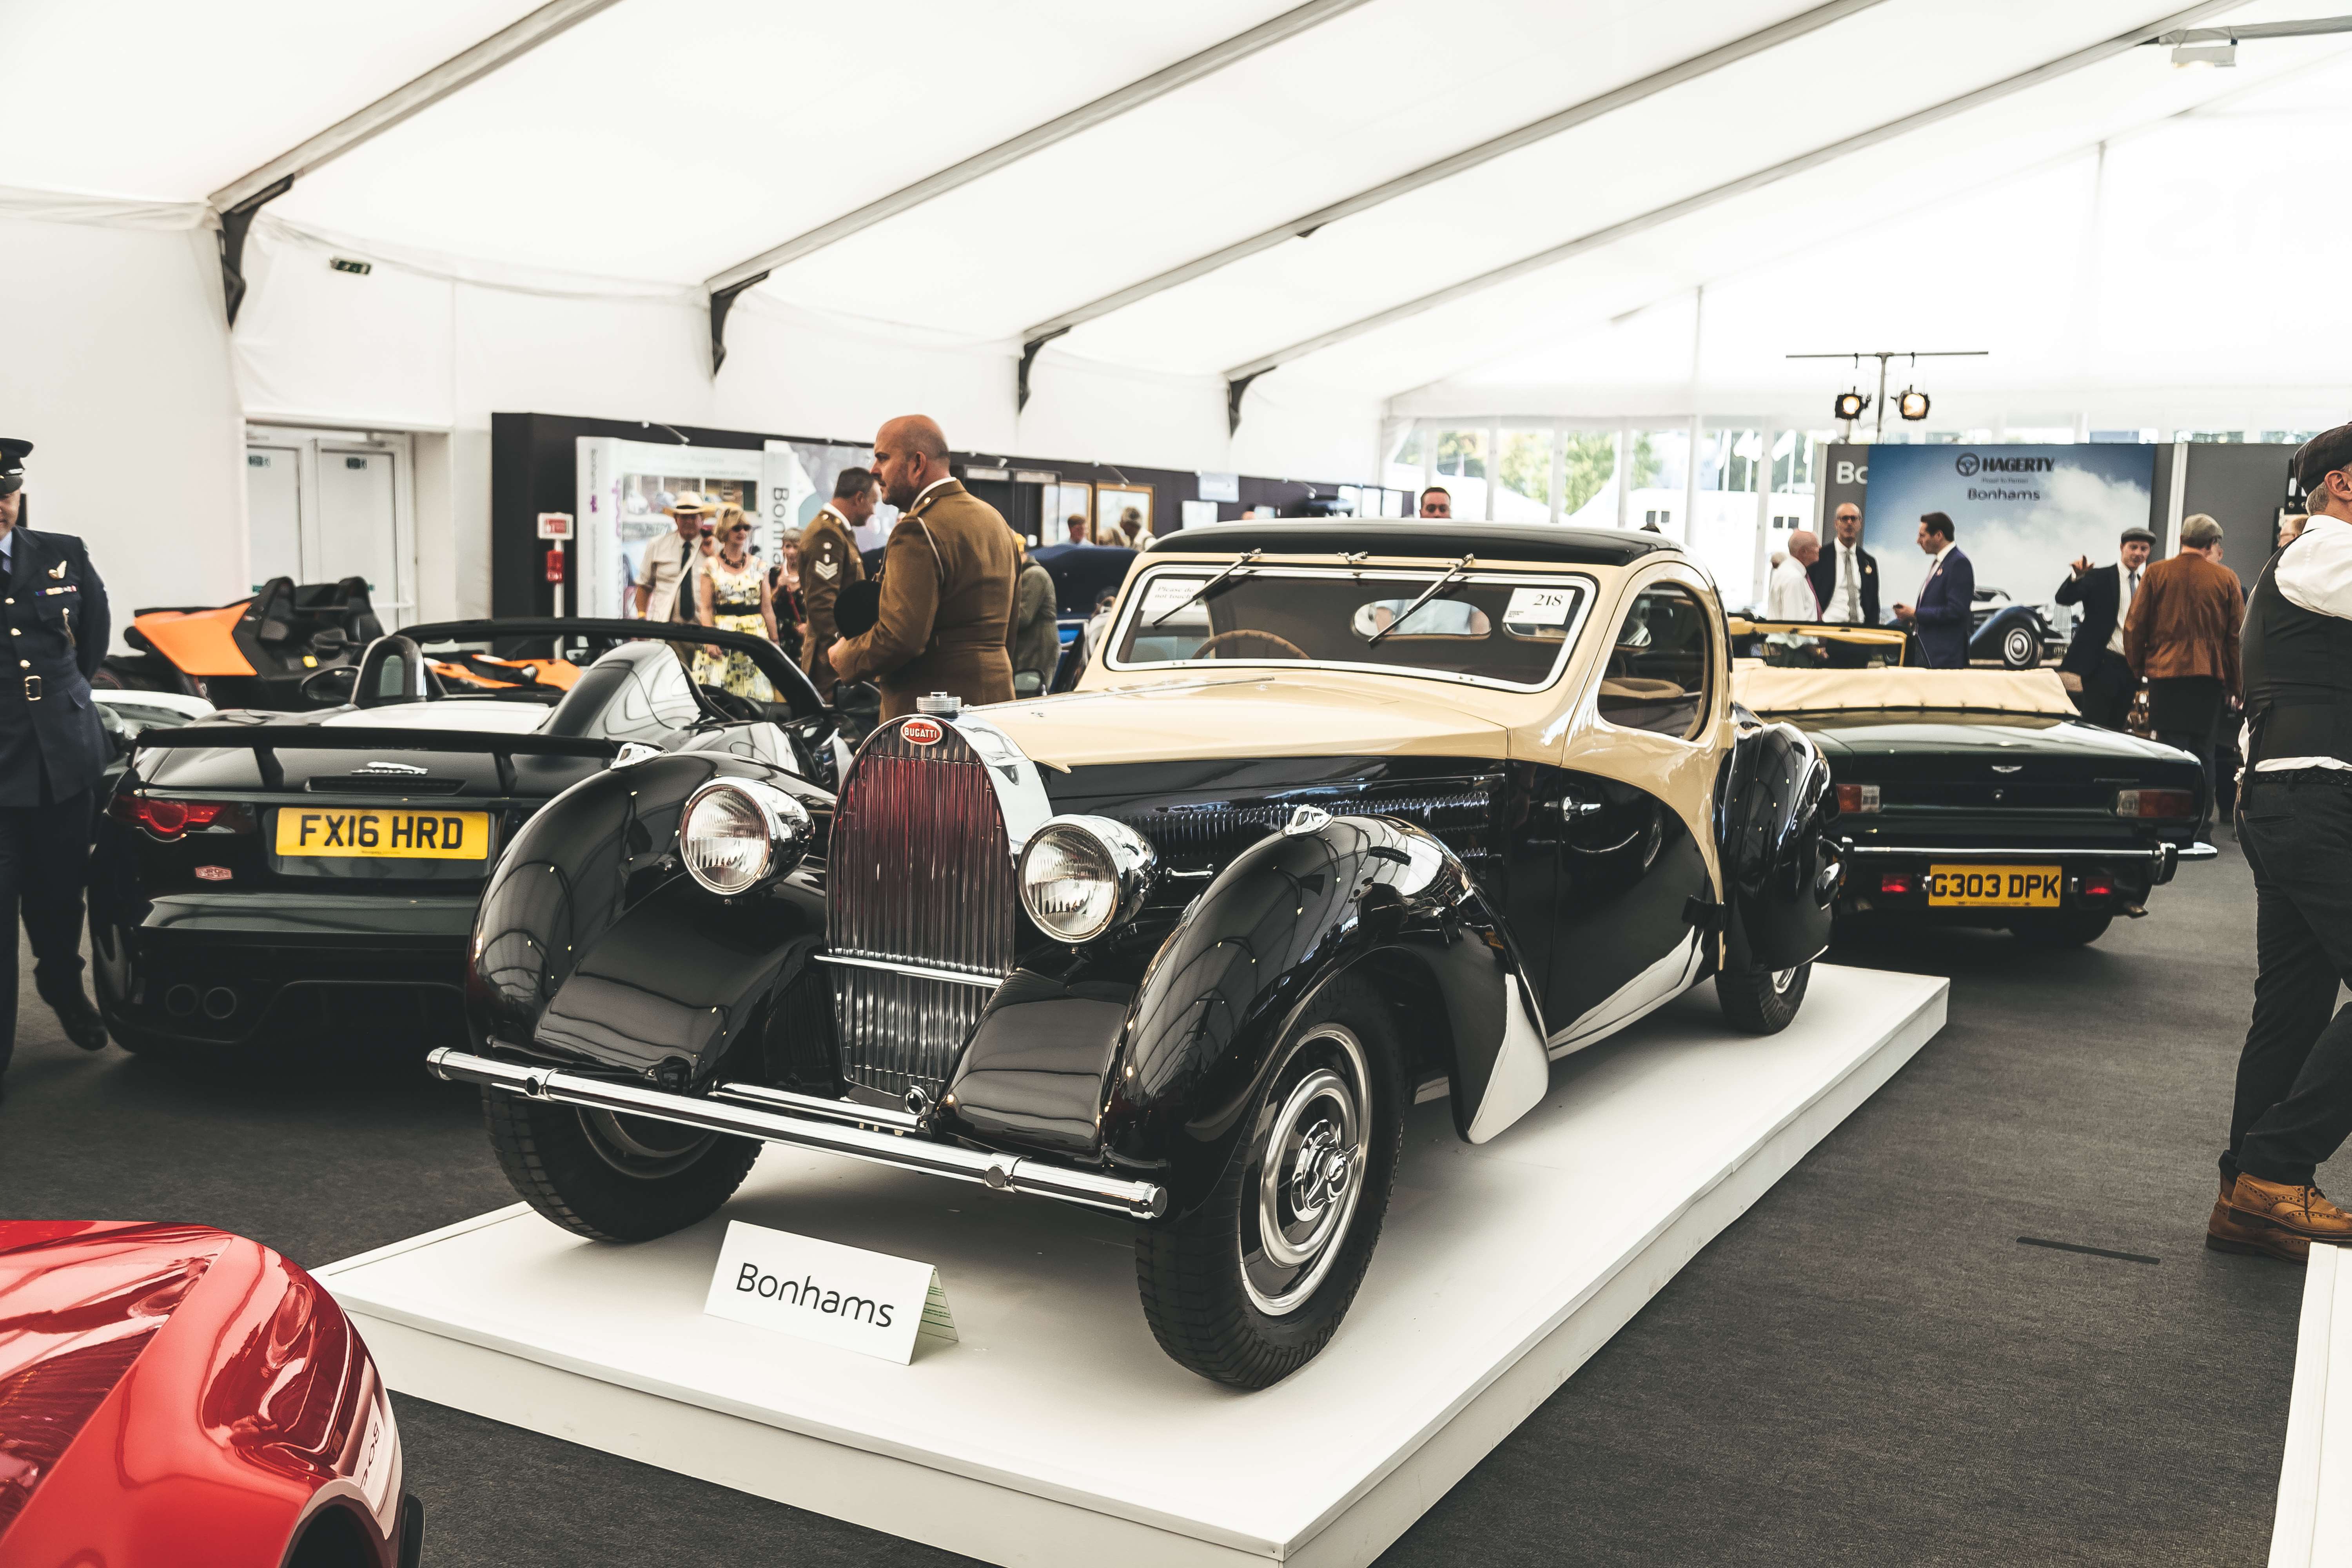 bugatti-type-57-bonhams-revival-2019-sale-goodwood-17092019.jpg